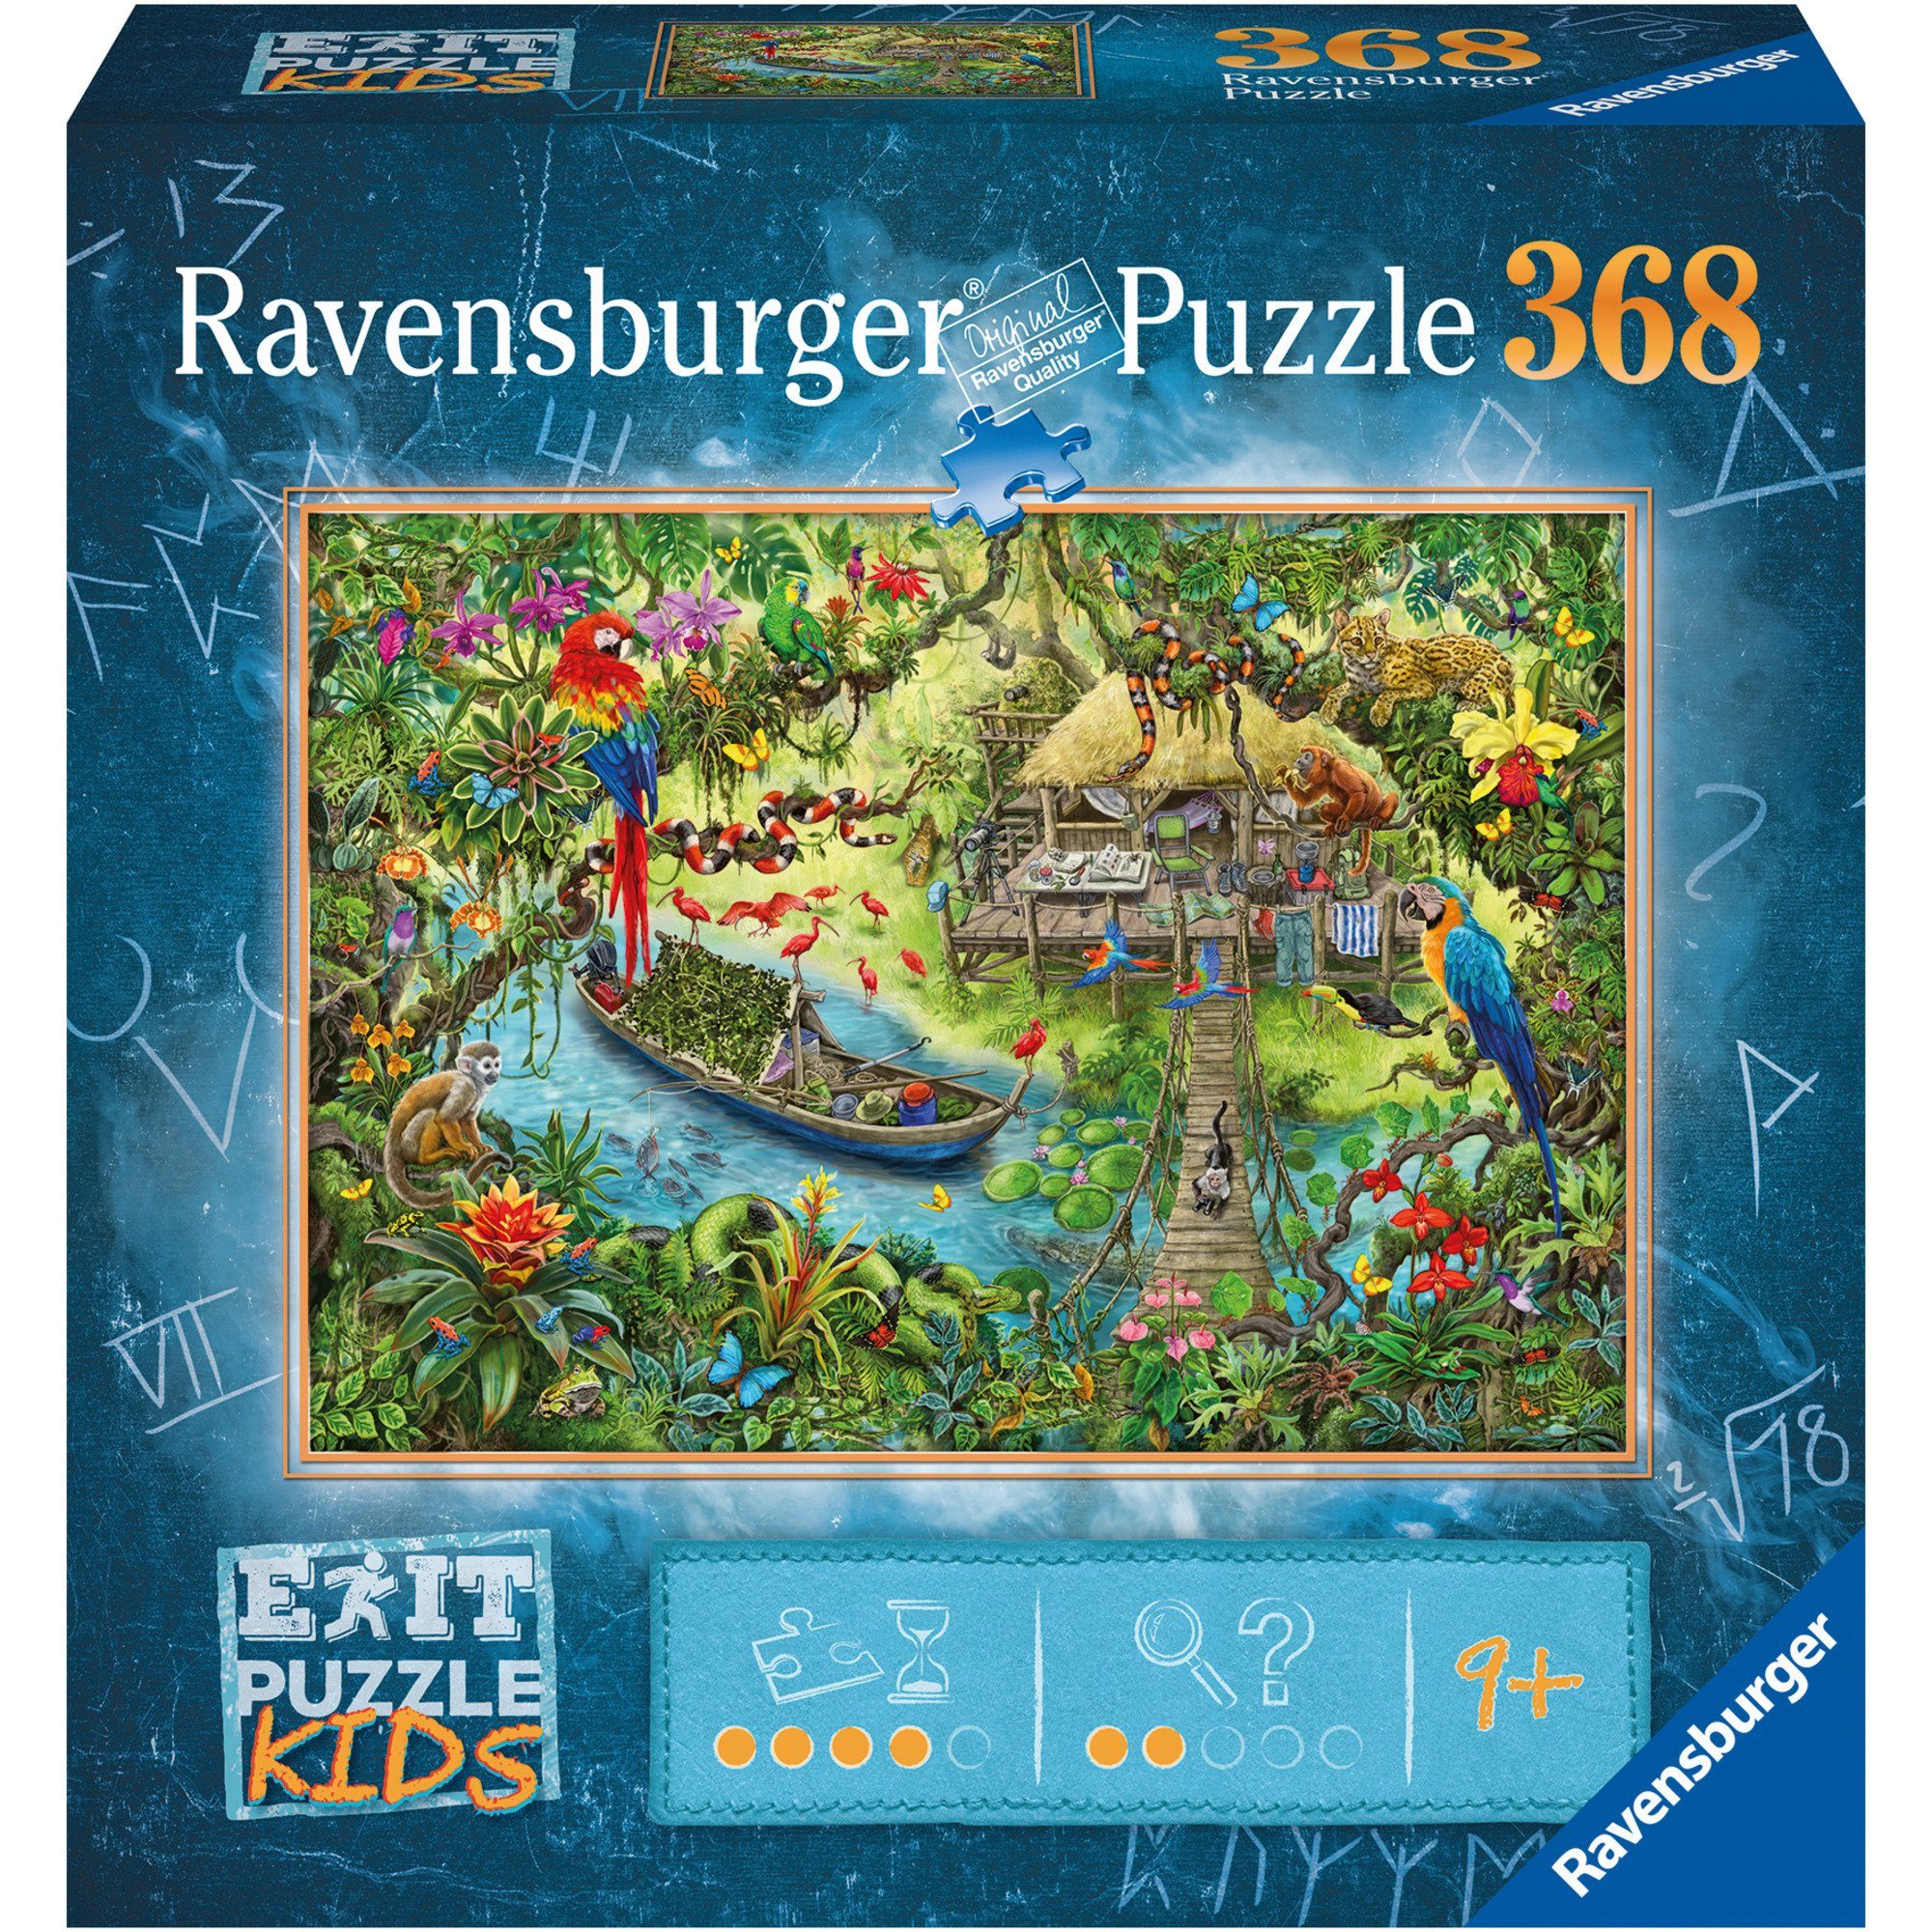 Ravensburger Puzzle EXIT Puzzle Kids - Die Dschungelexpediton, 368 Puzzleteile